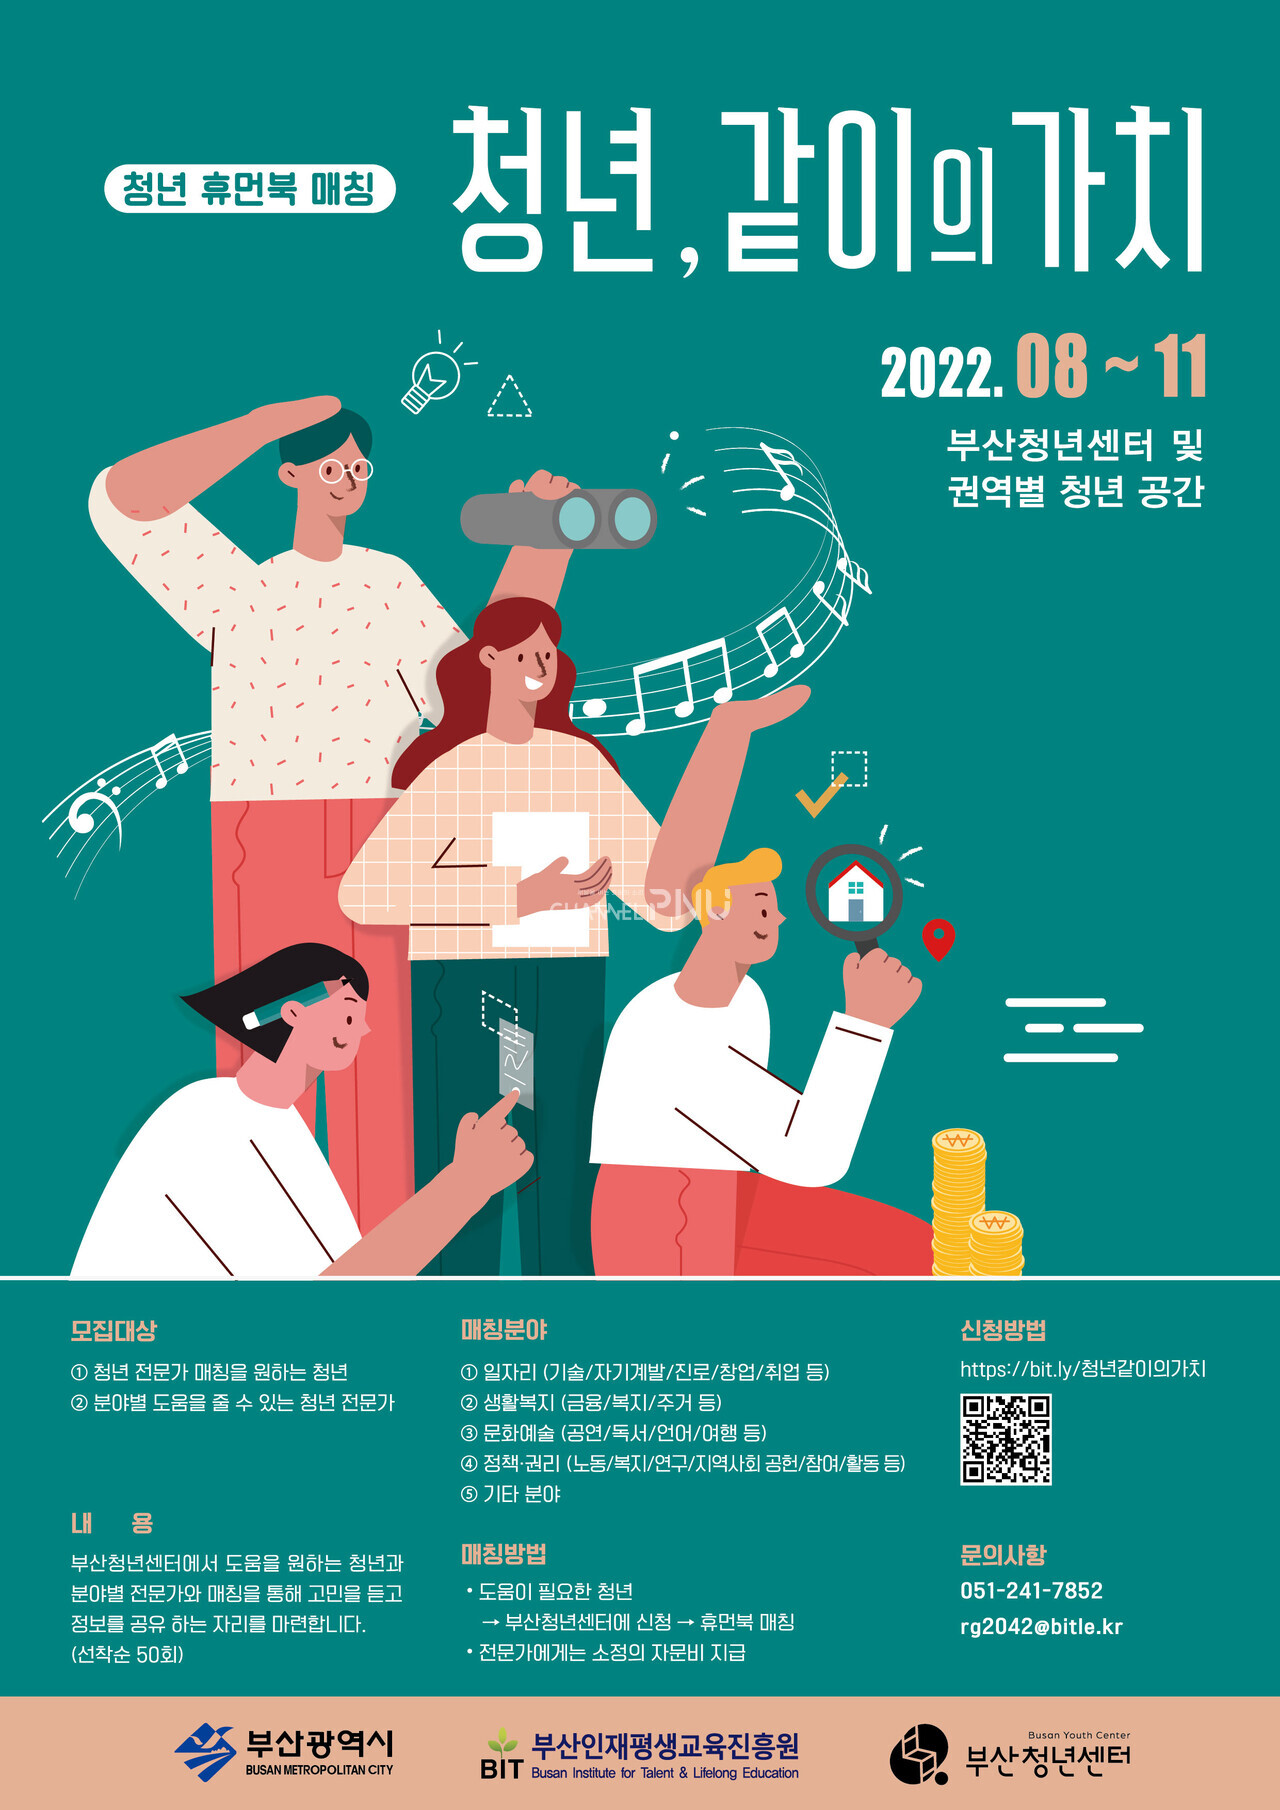 부산시 ‘청년, 같이의 가치’ 홍보 포스터. [출처: 부산시 홈페이지]